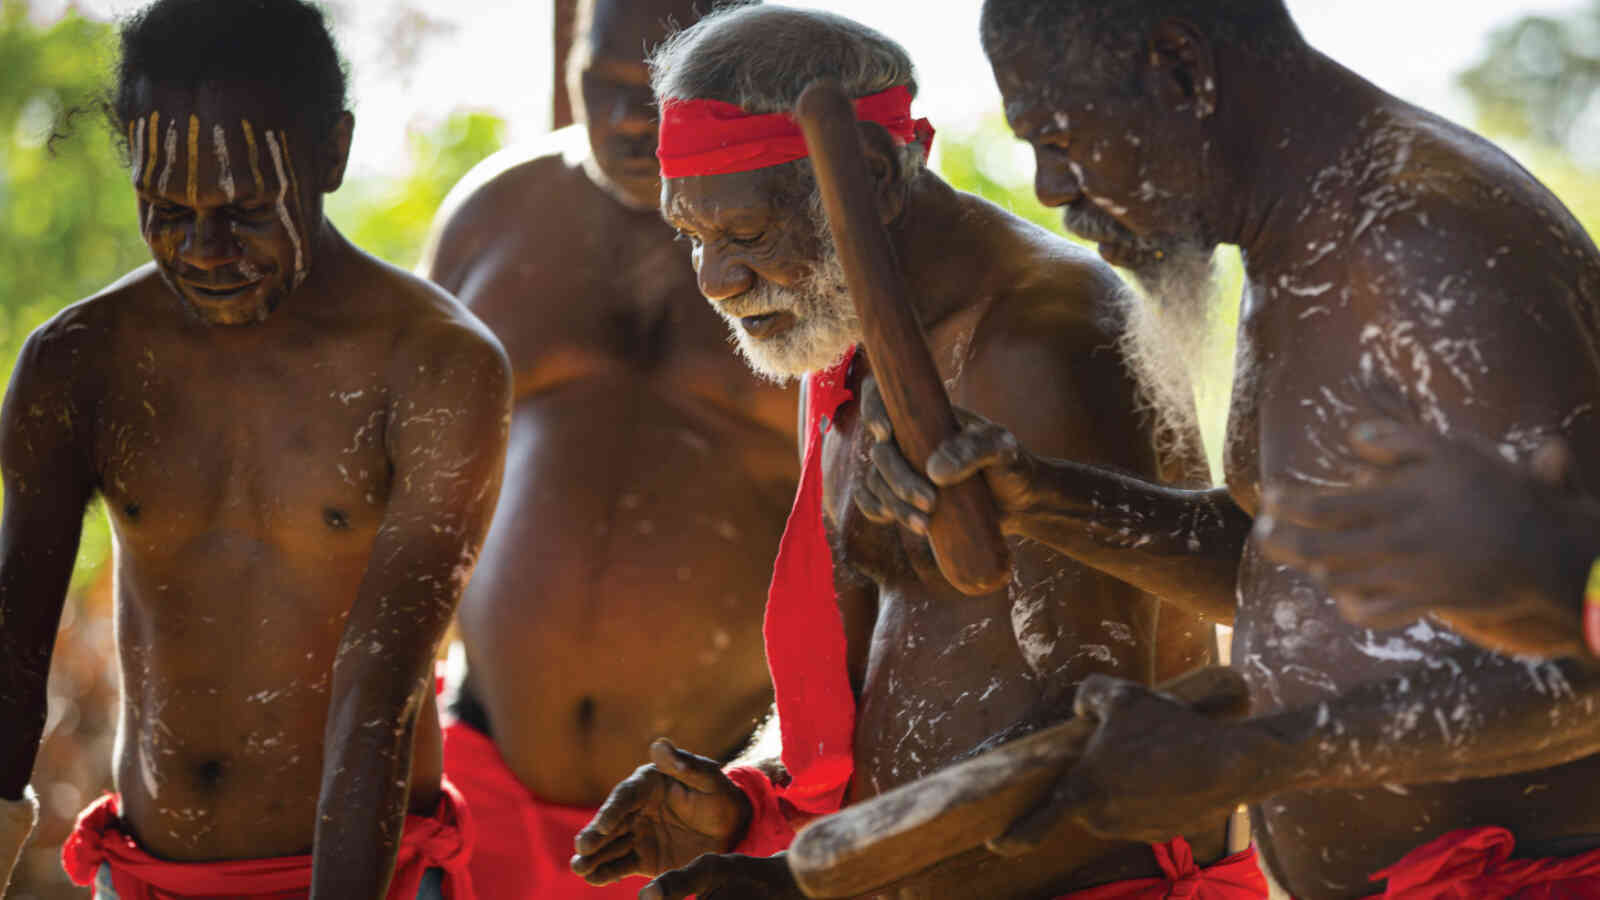 Tiwi Islands ceremony